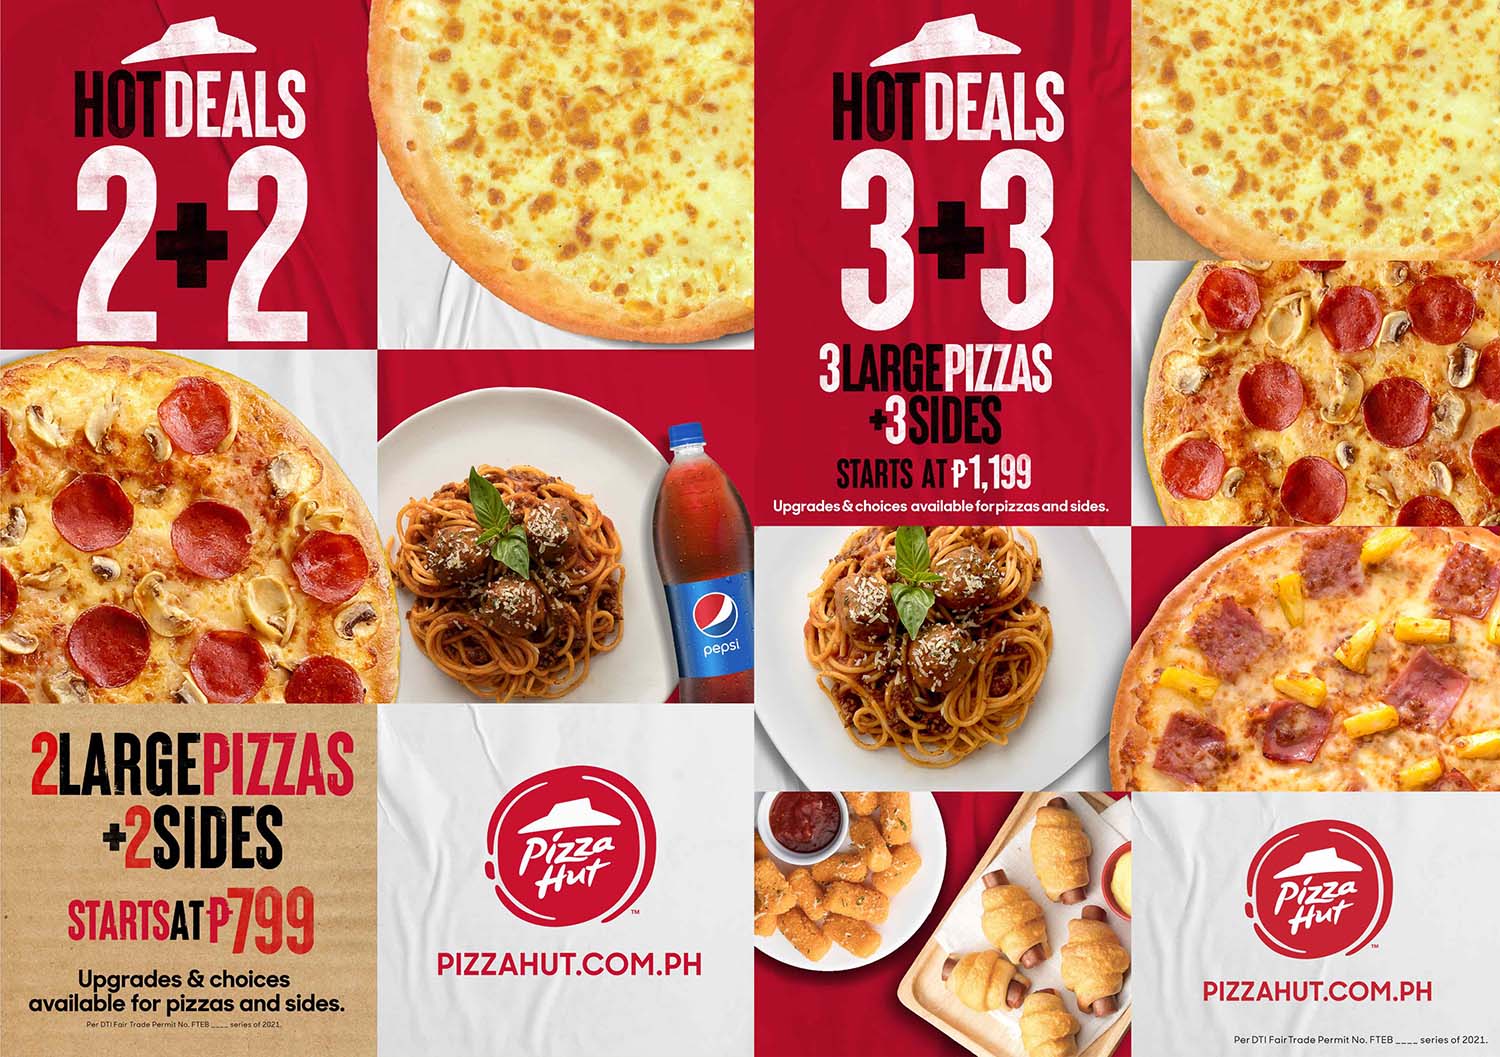 Petsa De Peligro, No Problemo! with Pizza Hut’s 2 new Hot Deals offers